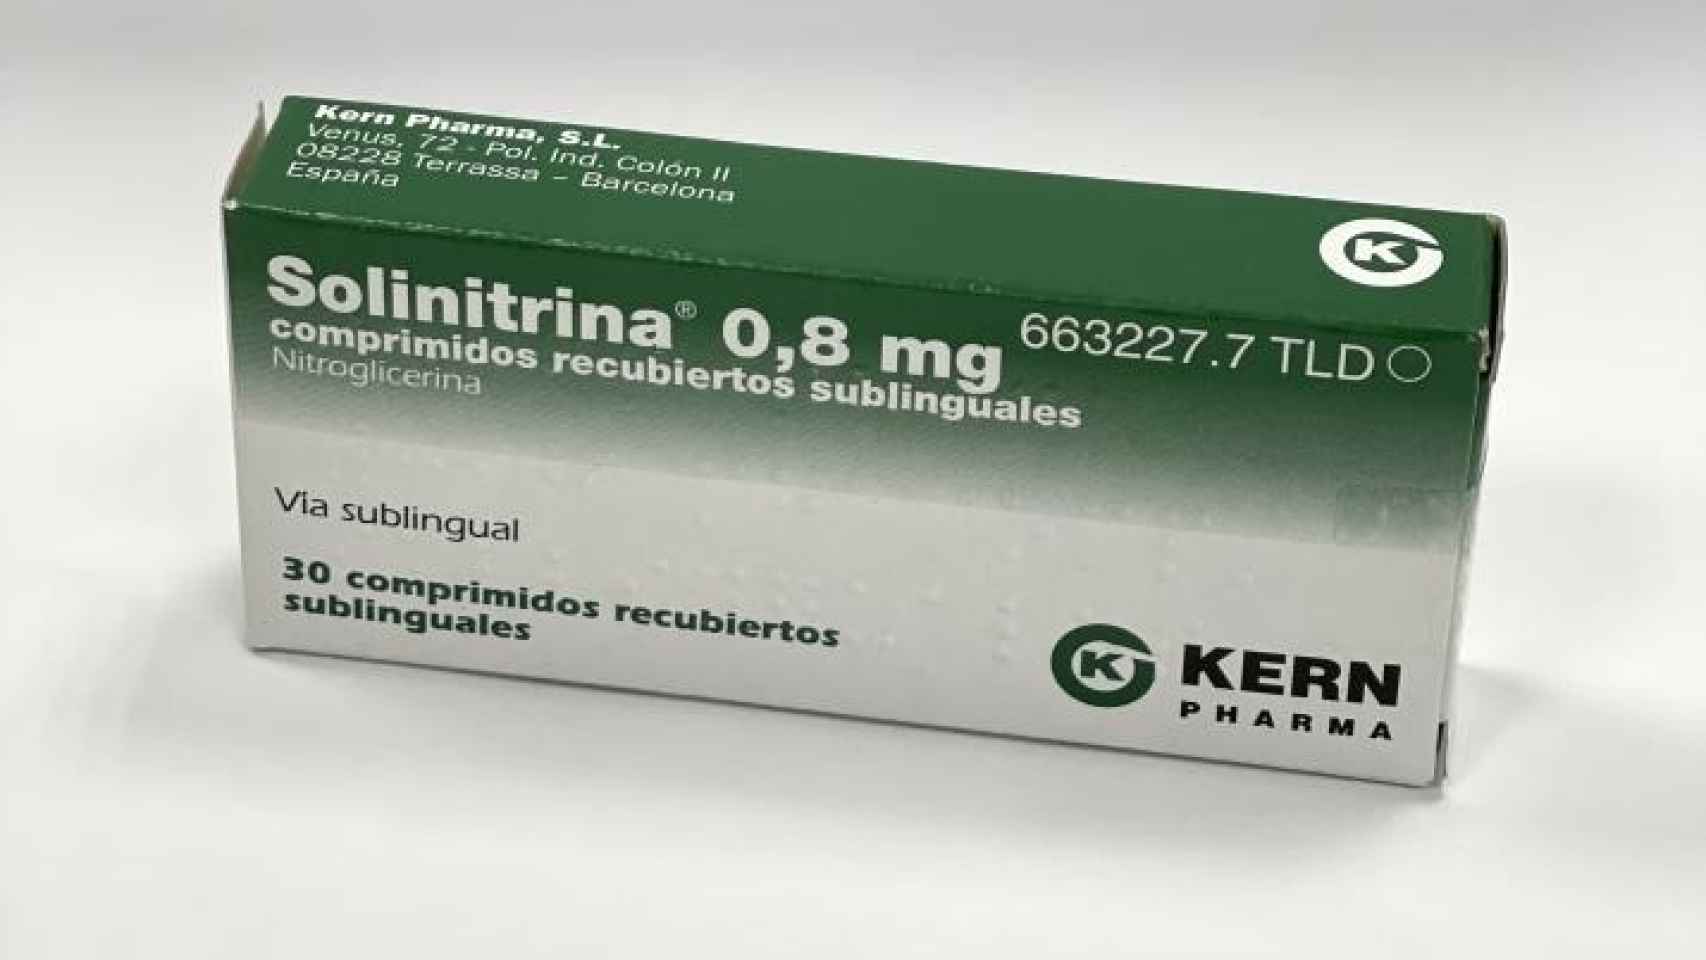 'Solinitrina' 0,8 mg comprimidos recubiertos sublinguales en 30 comprimidos, de Kern Pharma